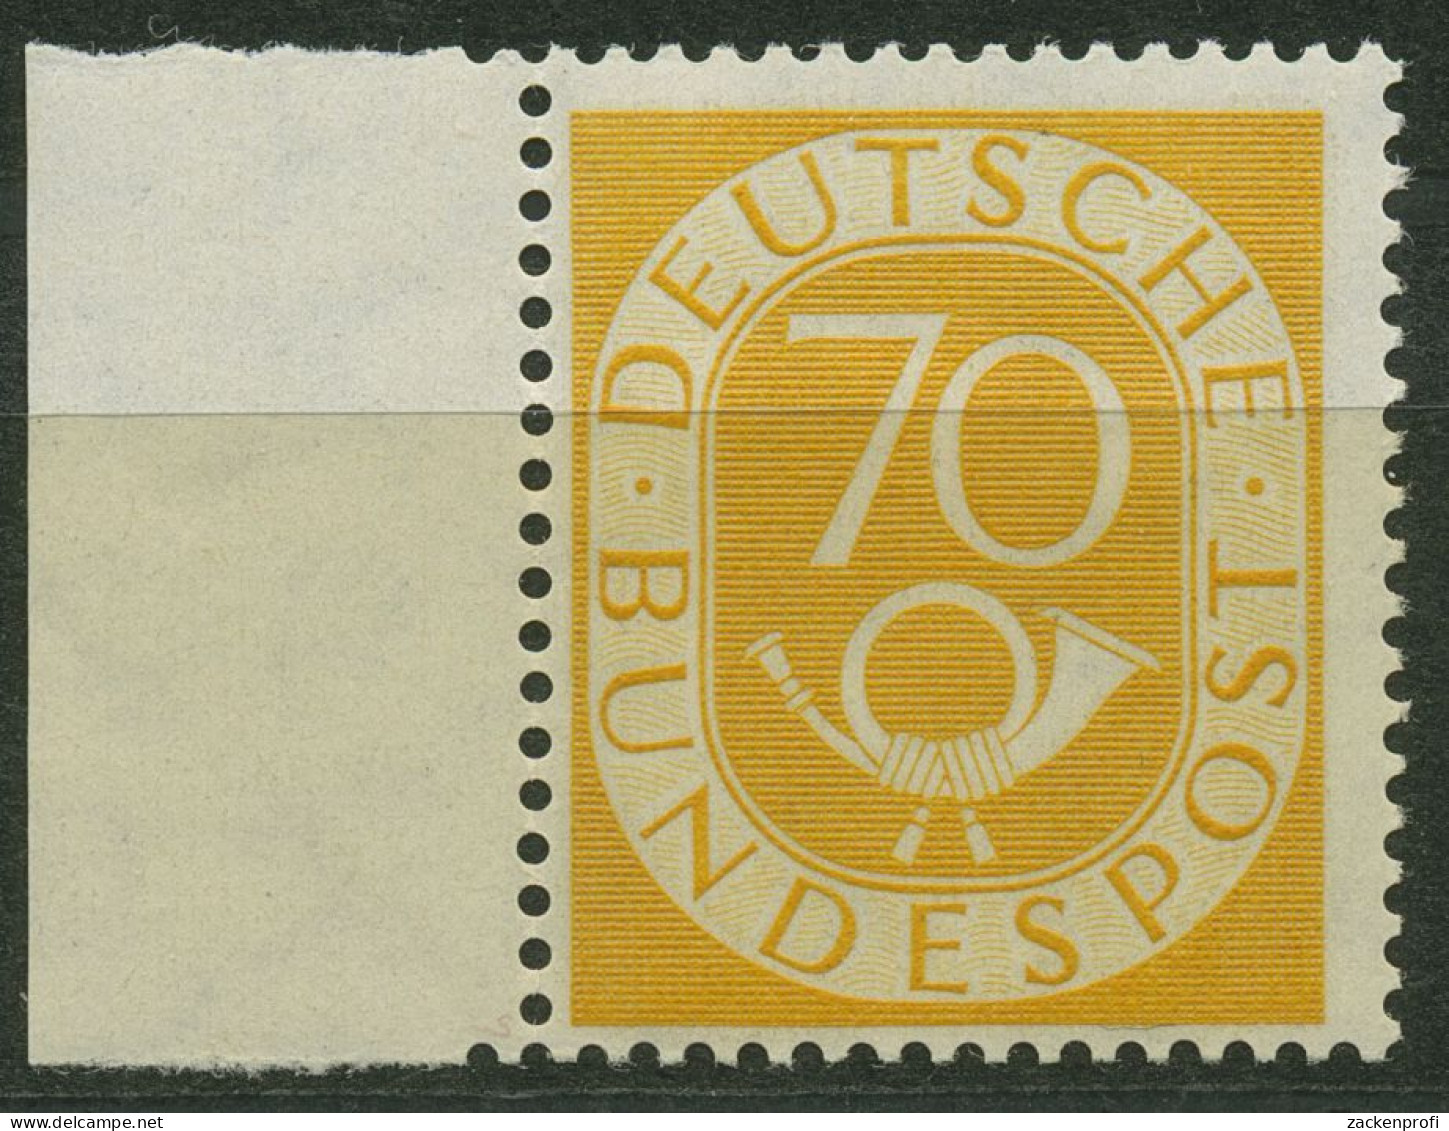 Bund 1951 Posthorn Bogenmarken Mit Seitenrand 136 SR. Li. Postfrisch Geprüft - Nuovi